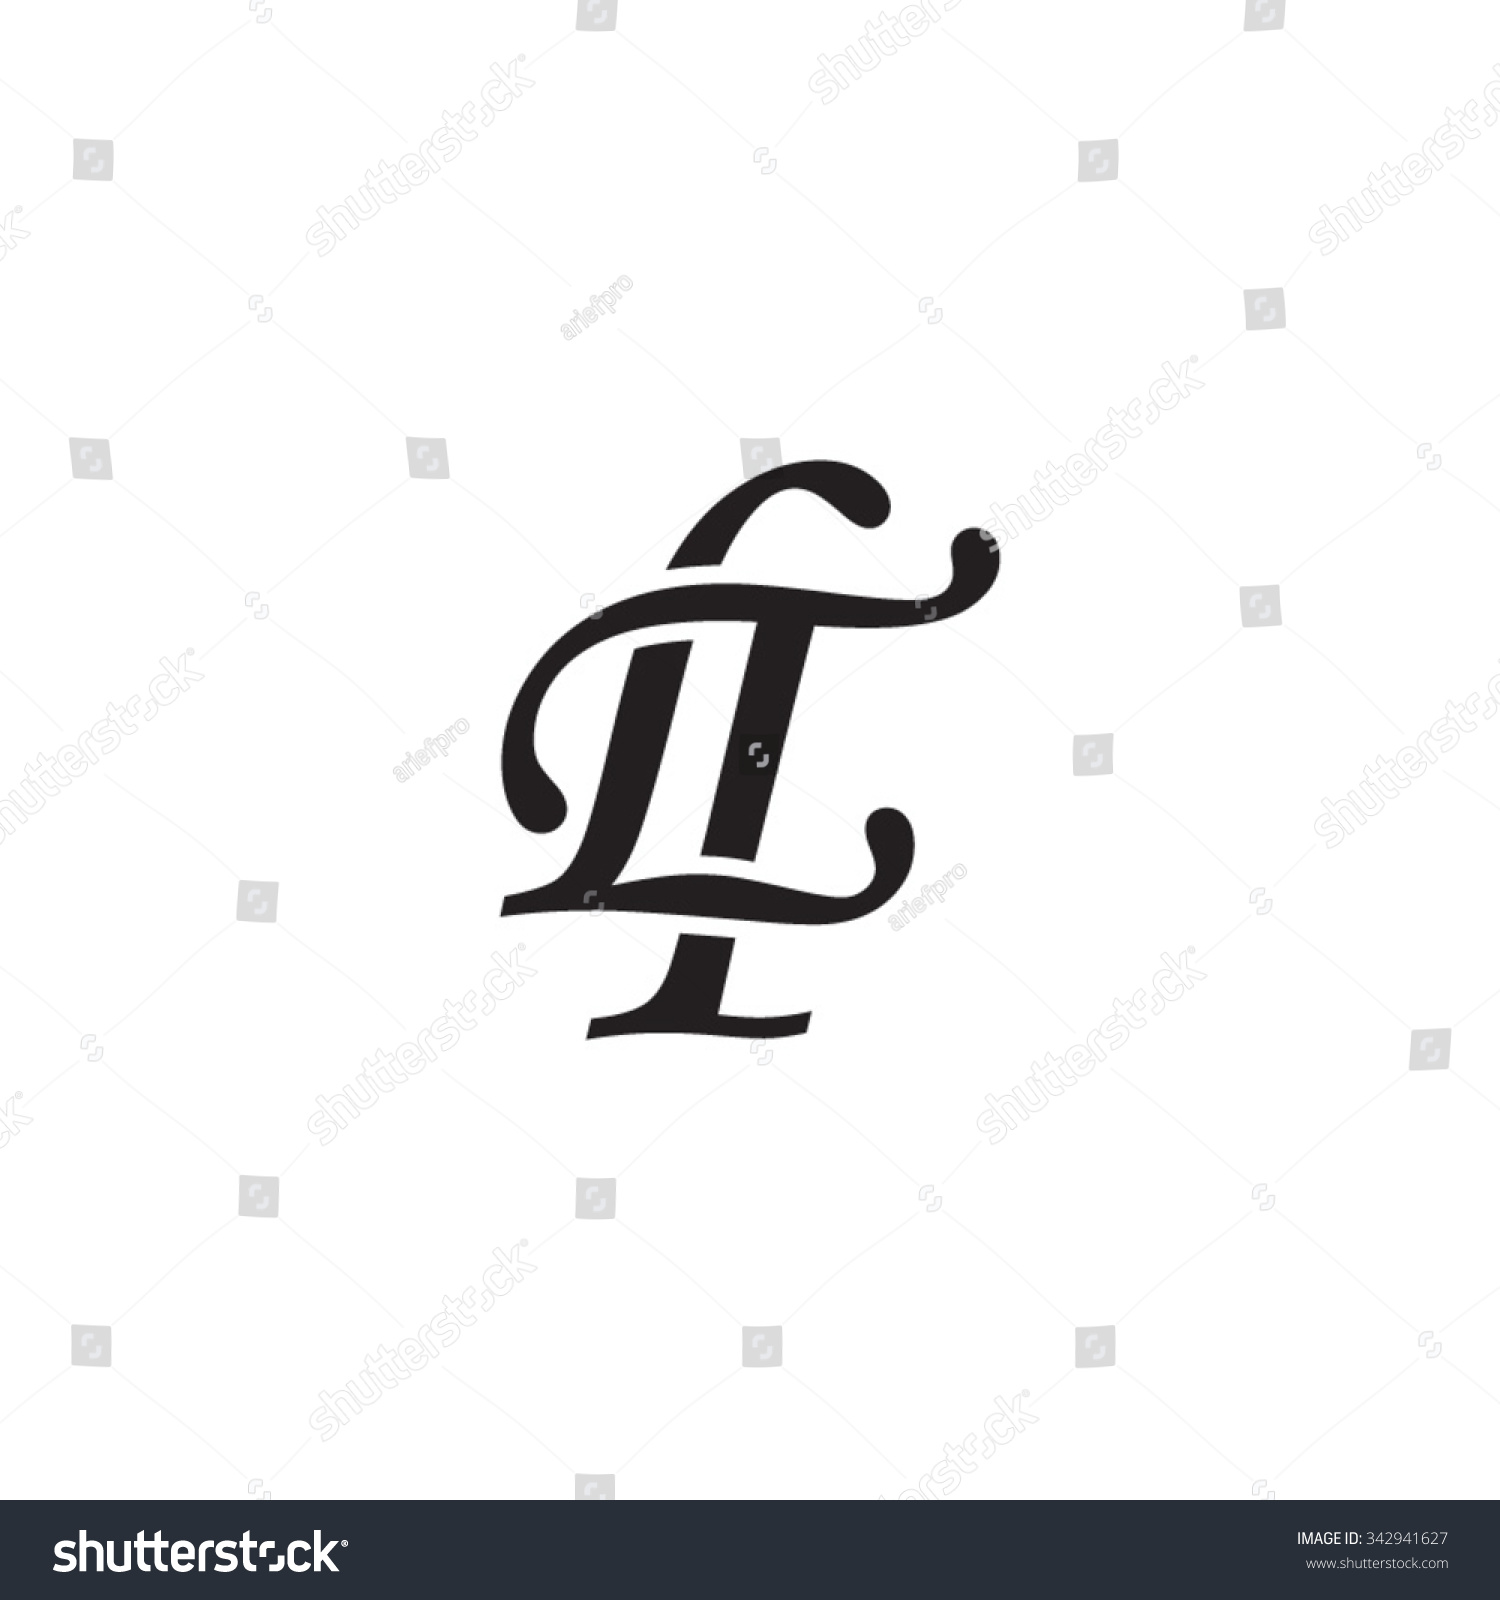 Lt Initial Monogram Logo Stock Vector Royalty Free